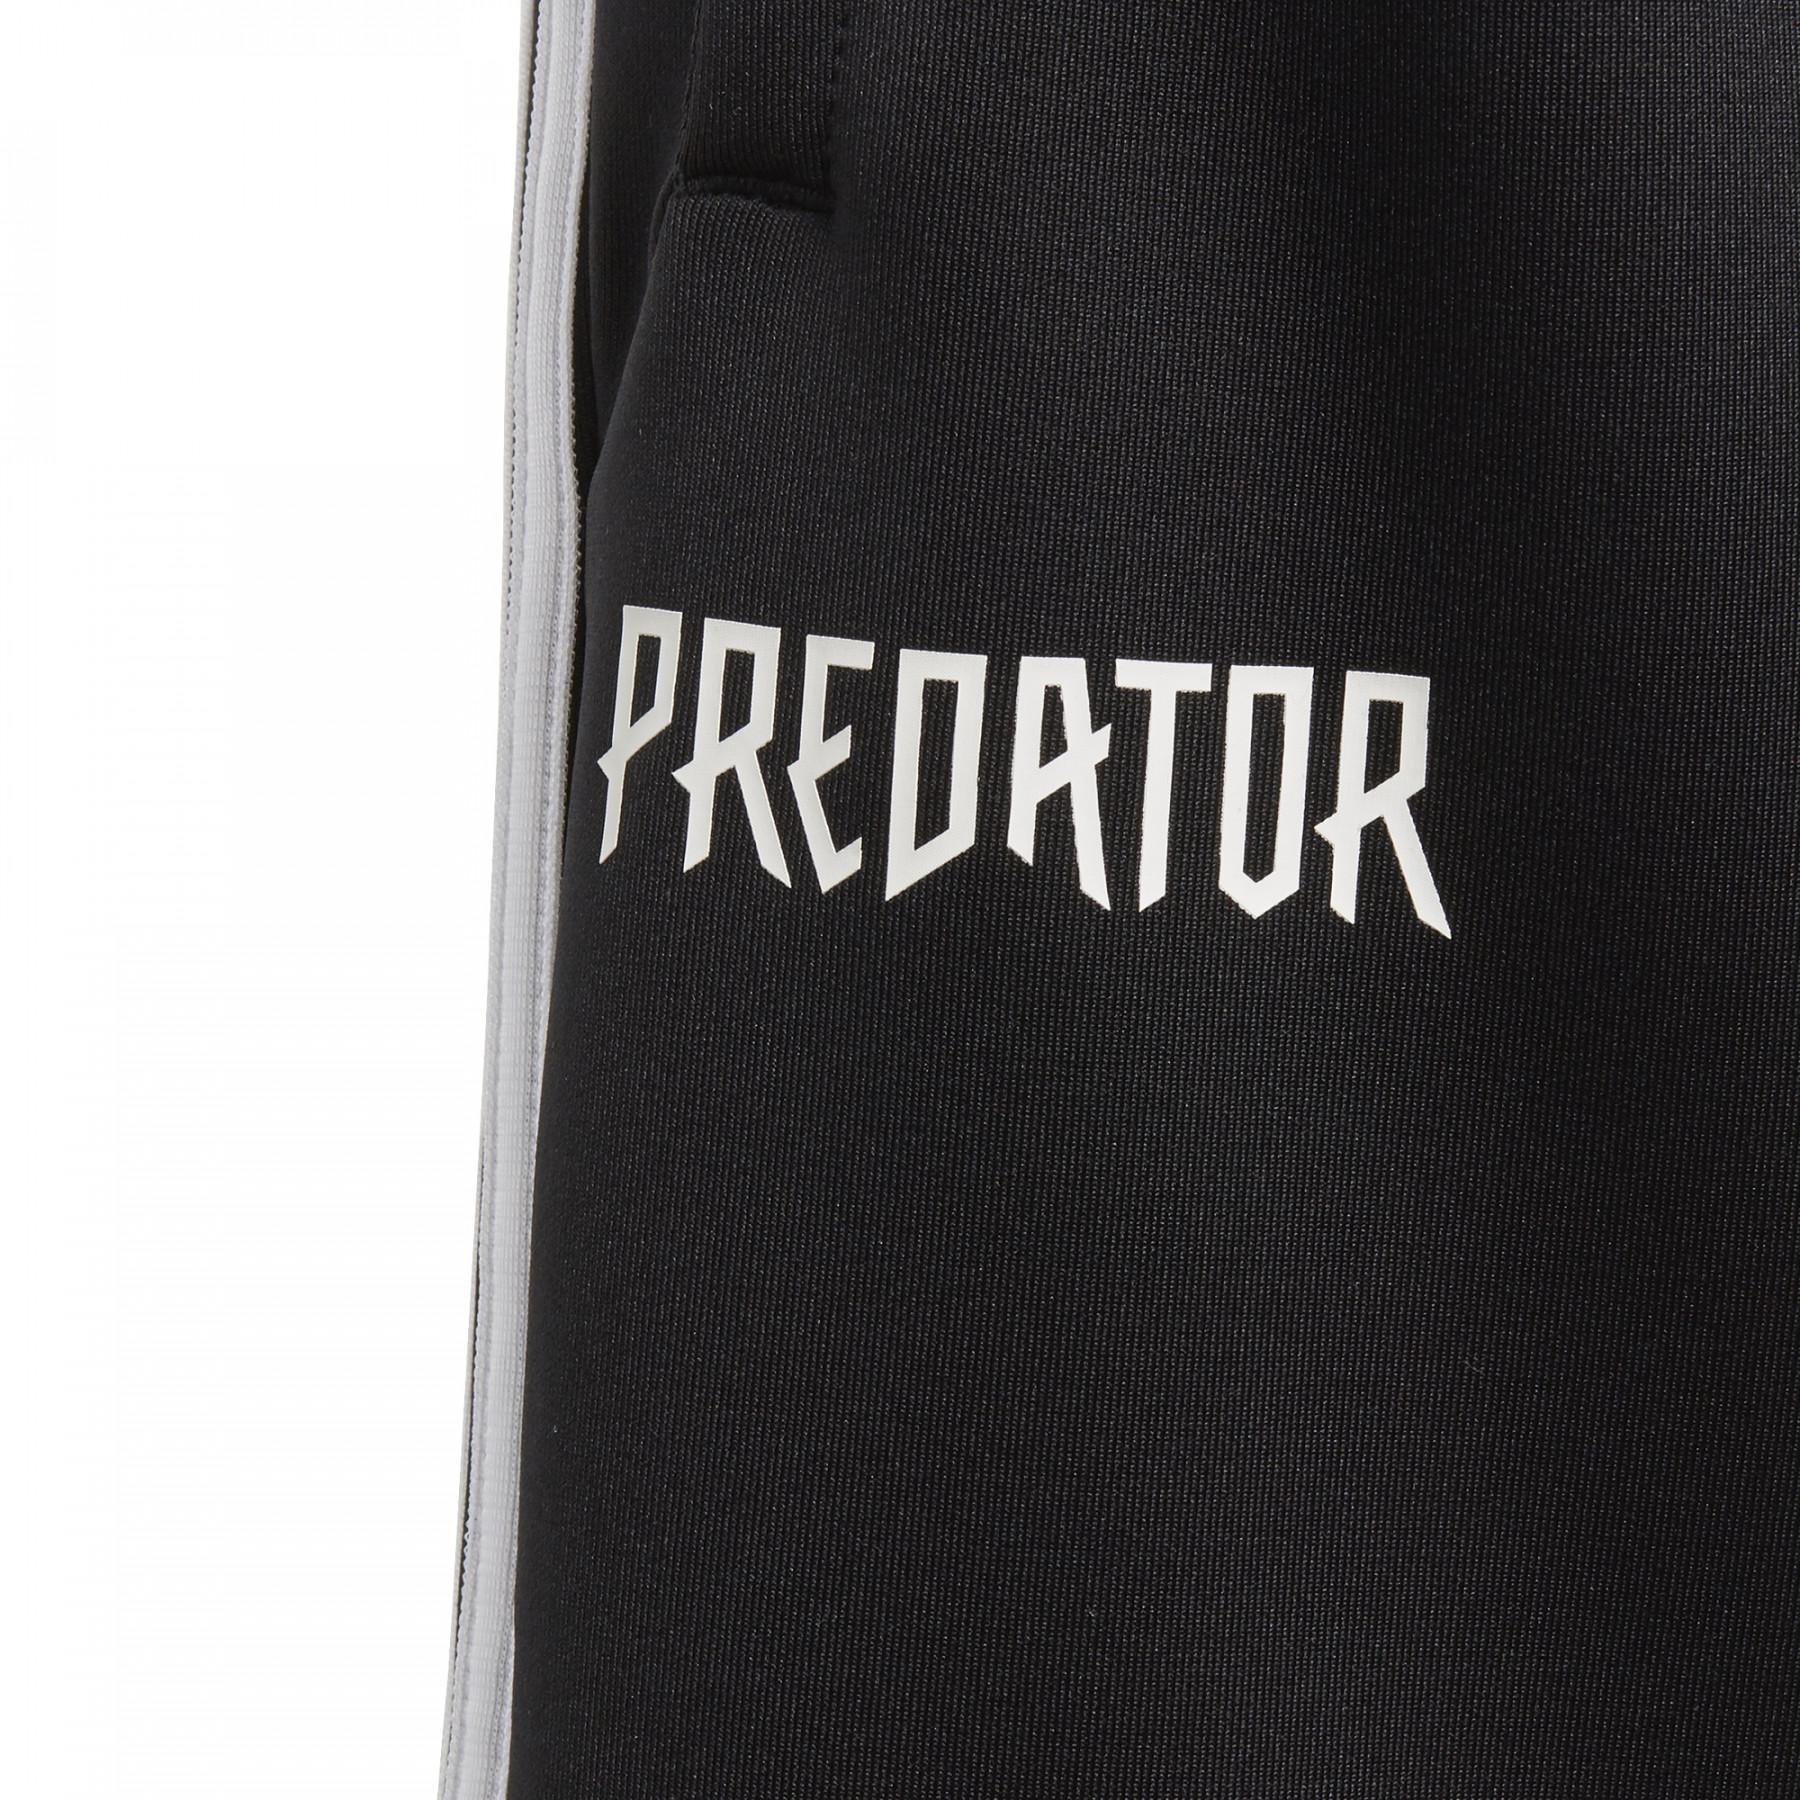 Pantalones cortos para niños adidas Predator 3-Stripes